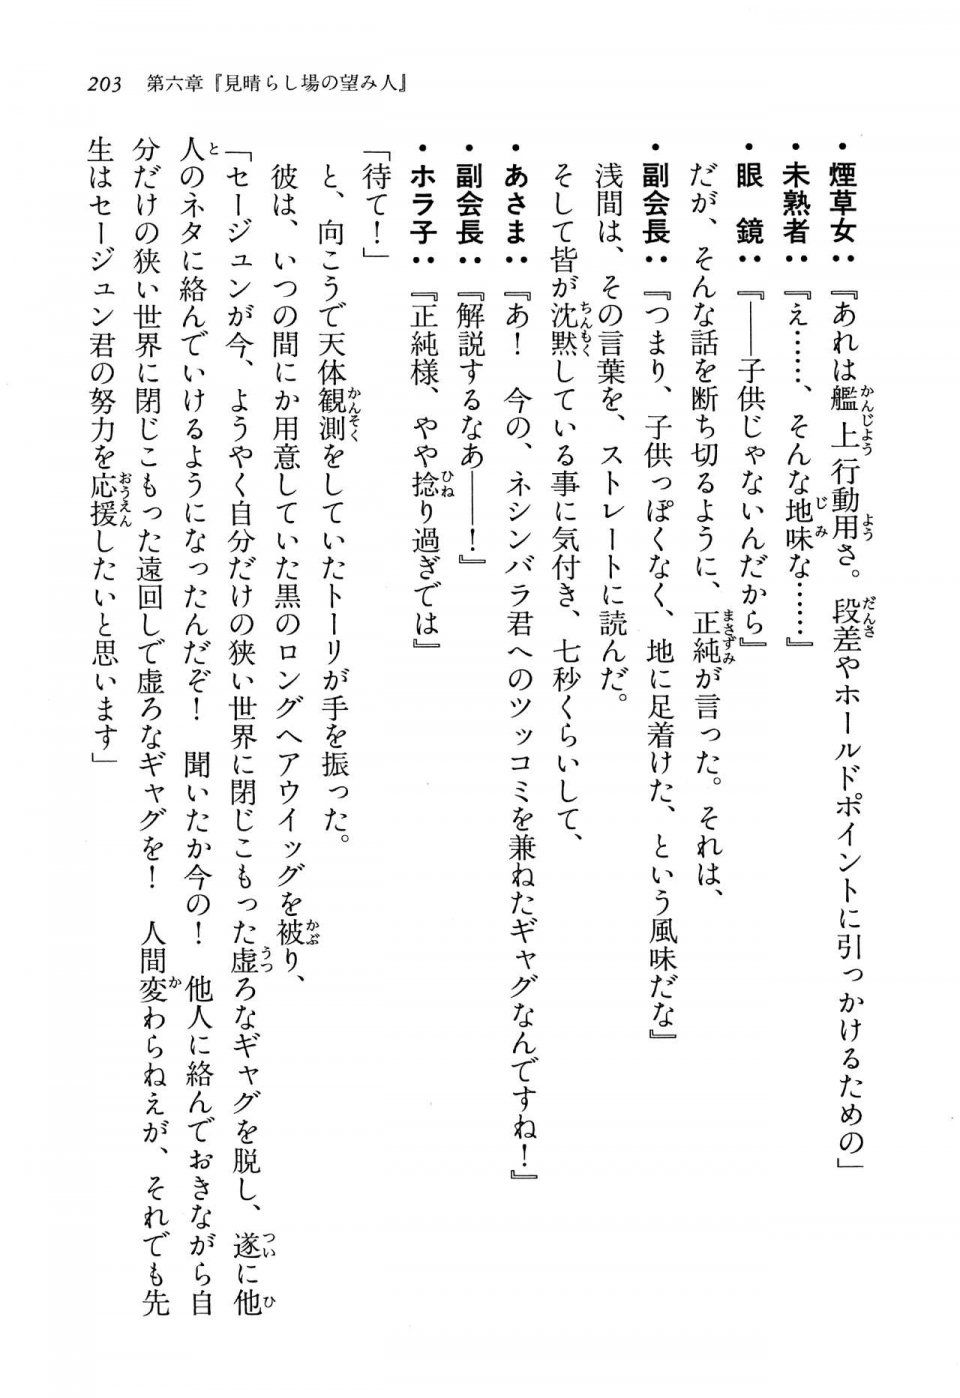 Kyoukai Senjou no Horizon LN Vol 13(6A) - Photo #203